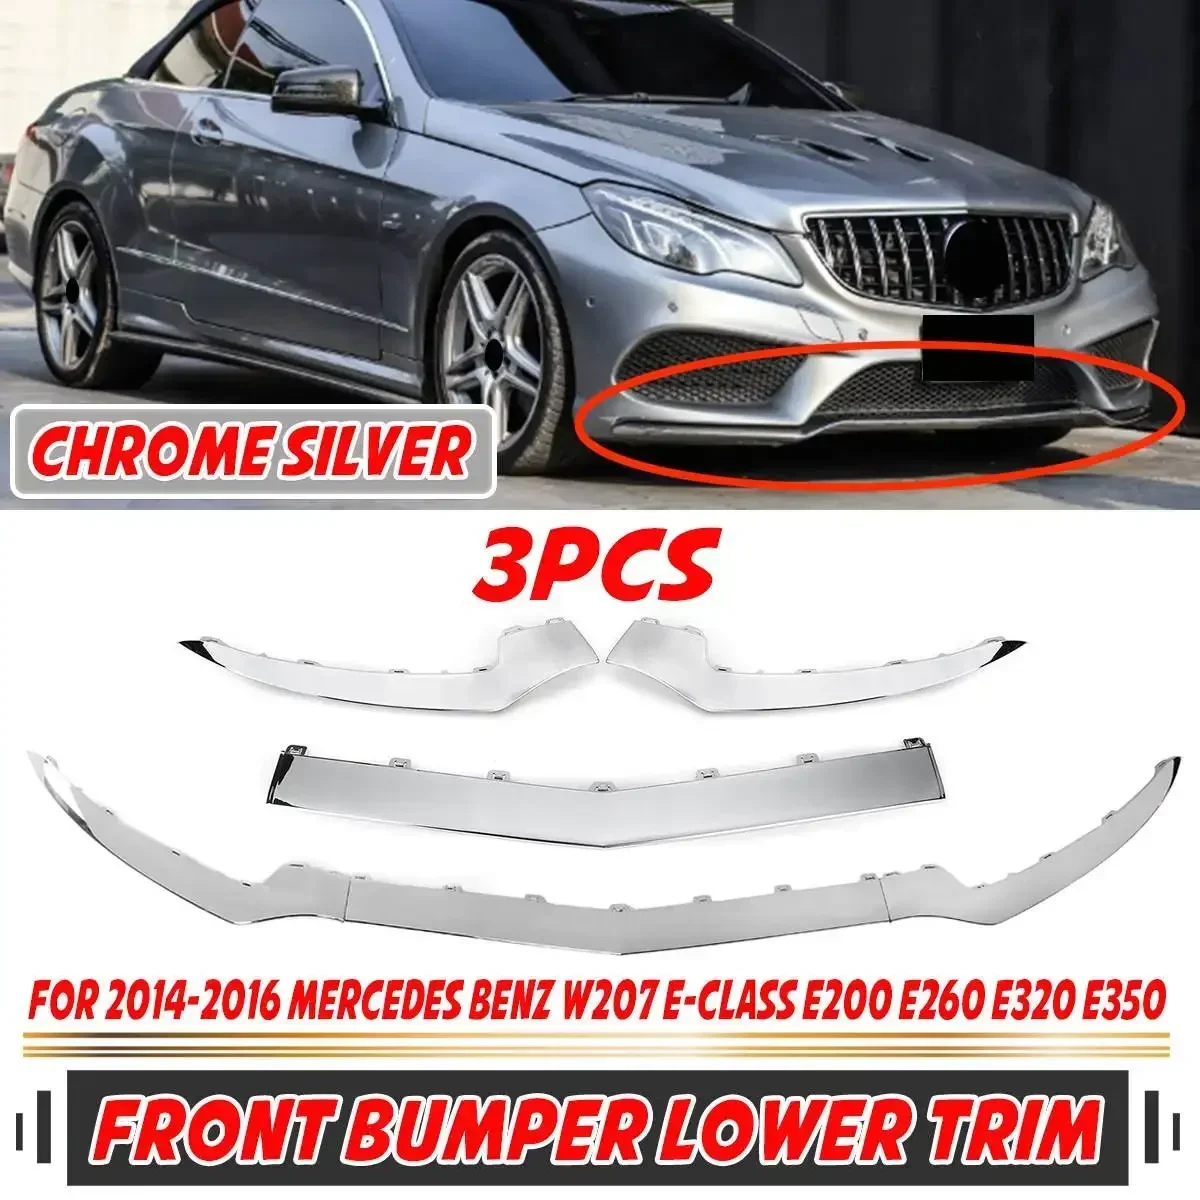 

3pc Car Front Bumper Lip Spoiler Splitter Diffuser Lip For Mercedes For Benz W207 A207 C207 E-Class E320 E350 2014-2016 Body Kit